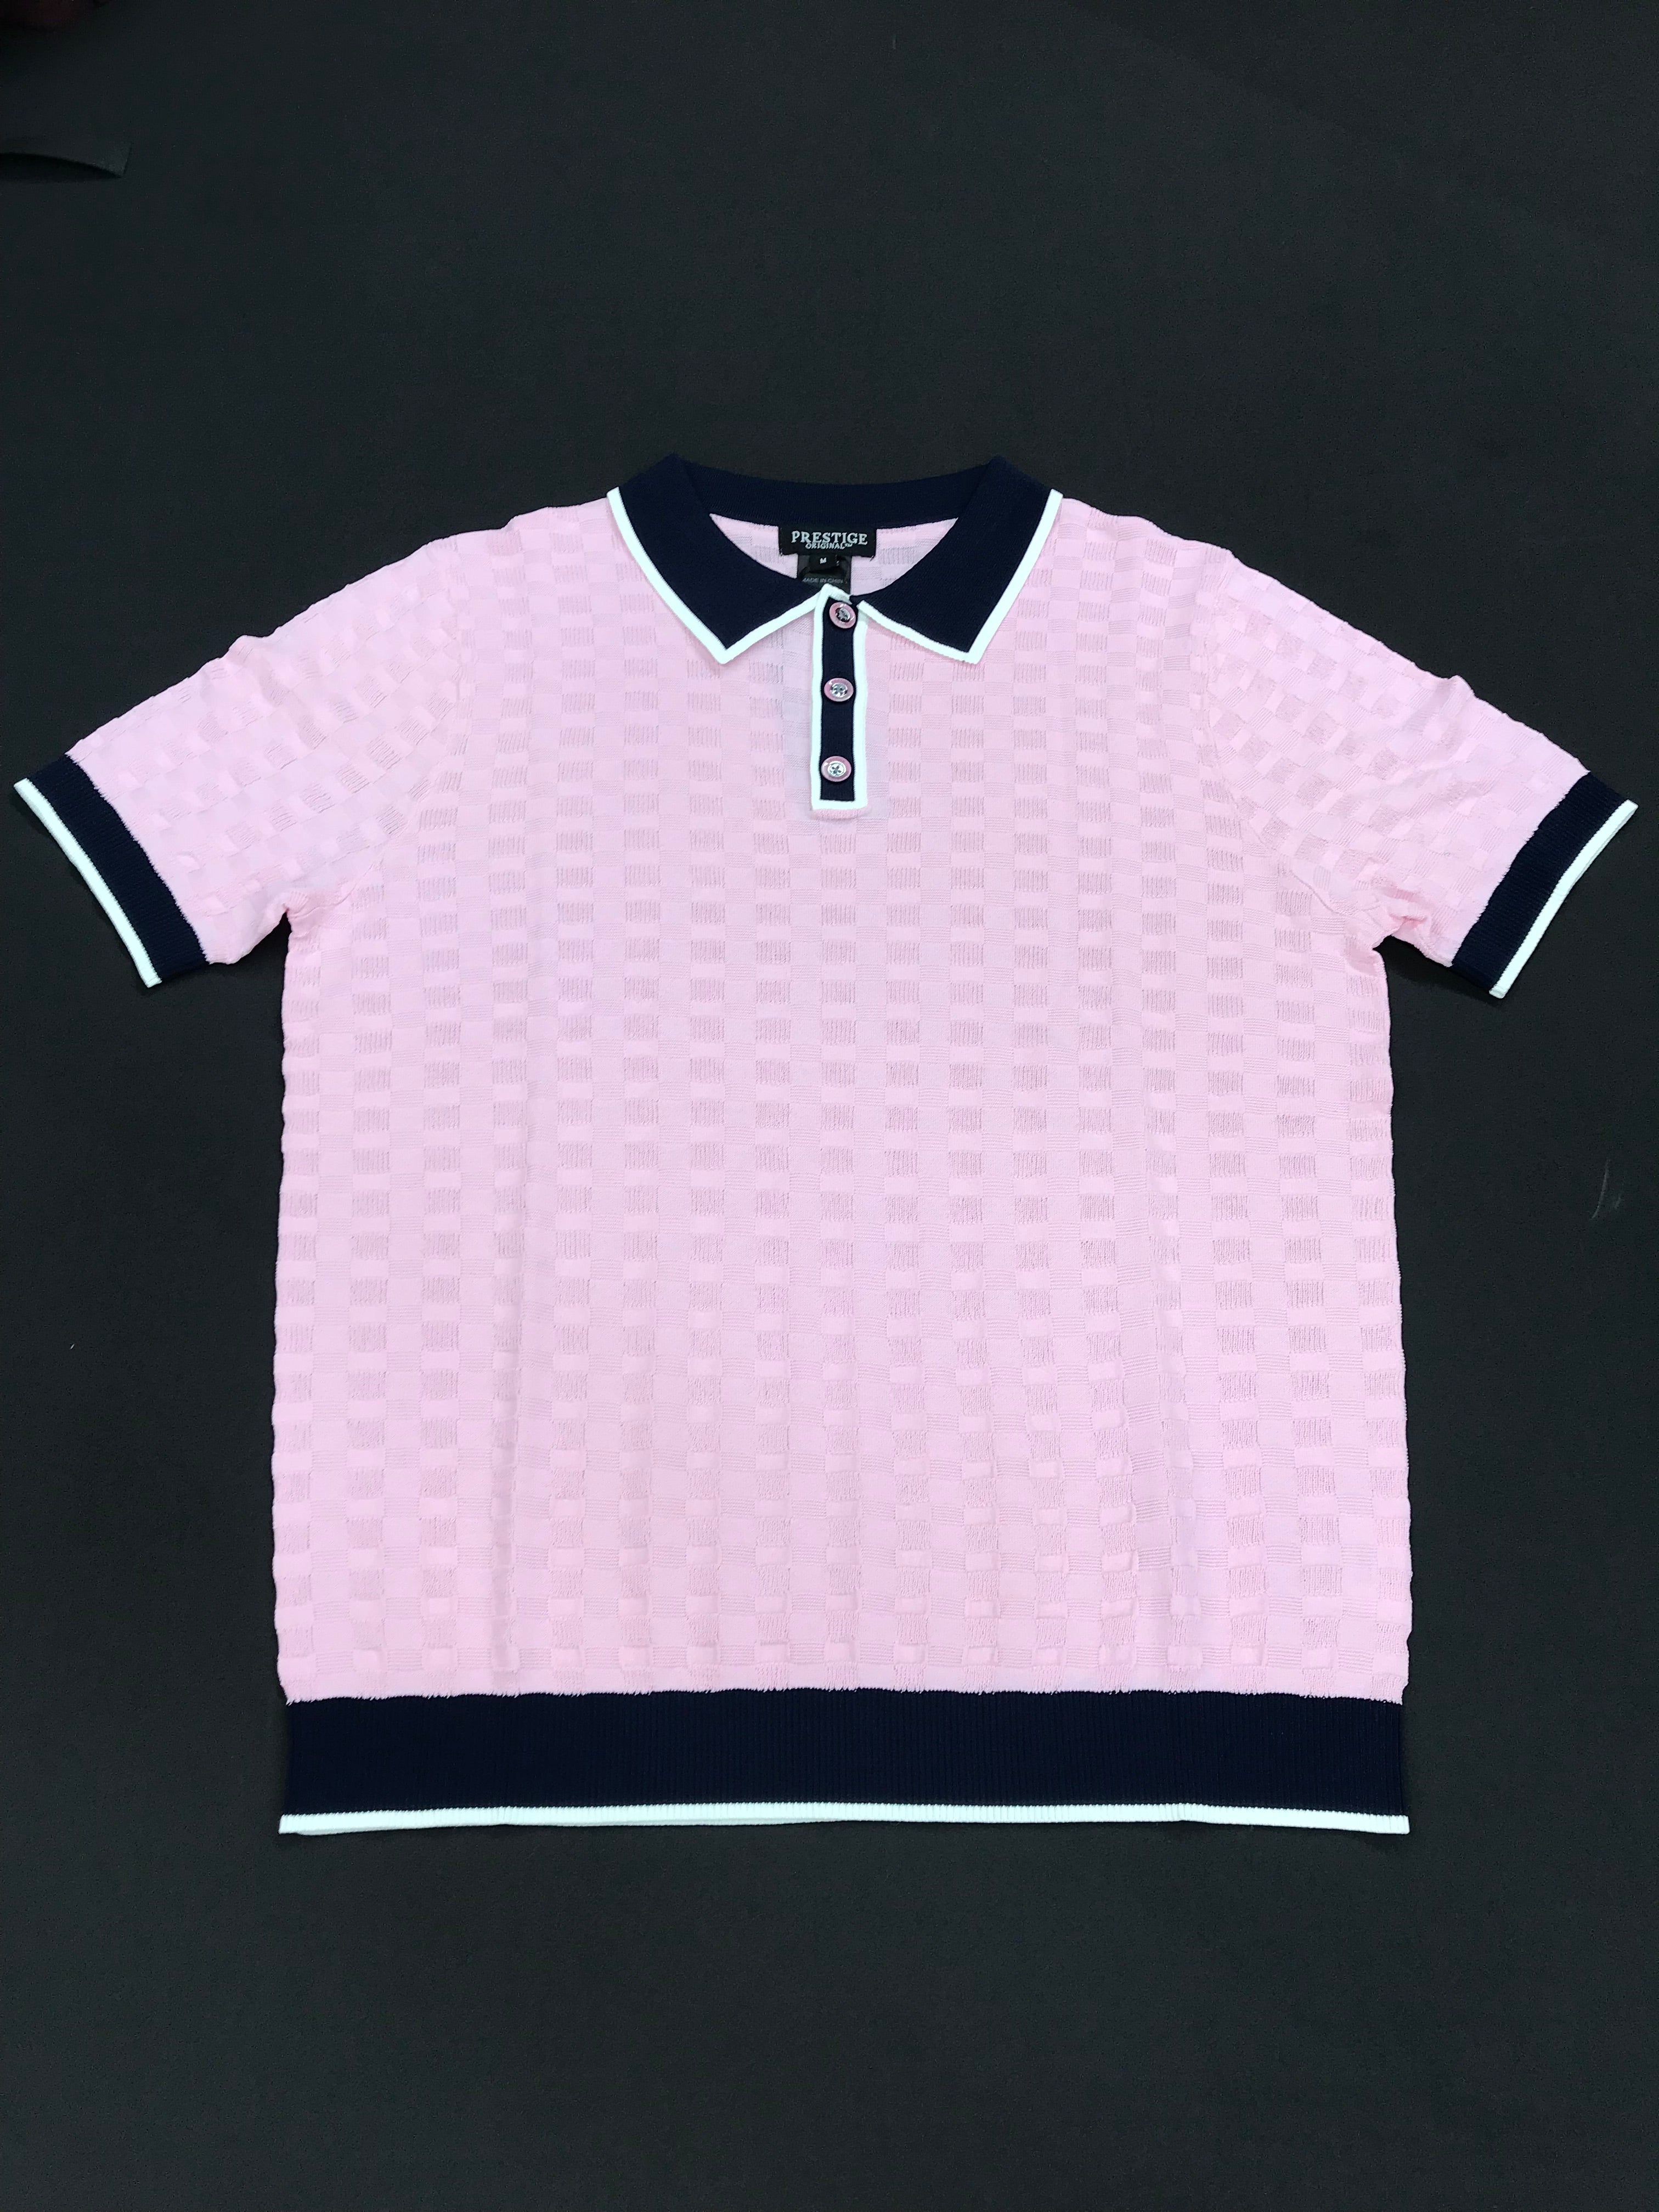 Prestige Pink/Navy/White Short Sleeve Shirt